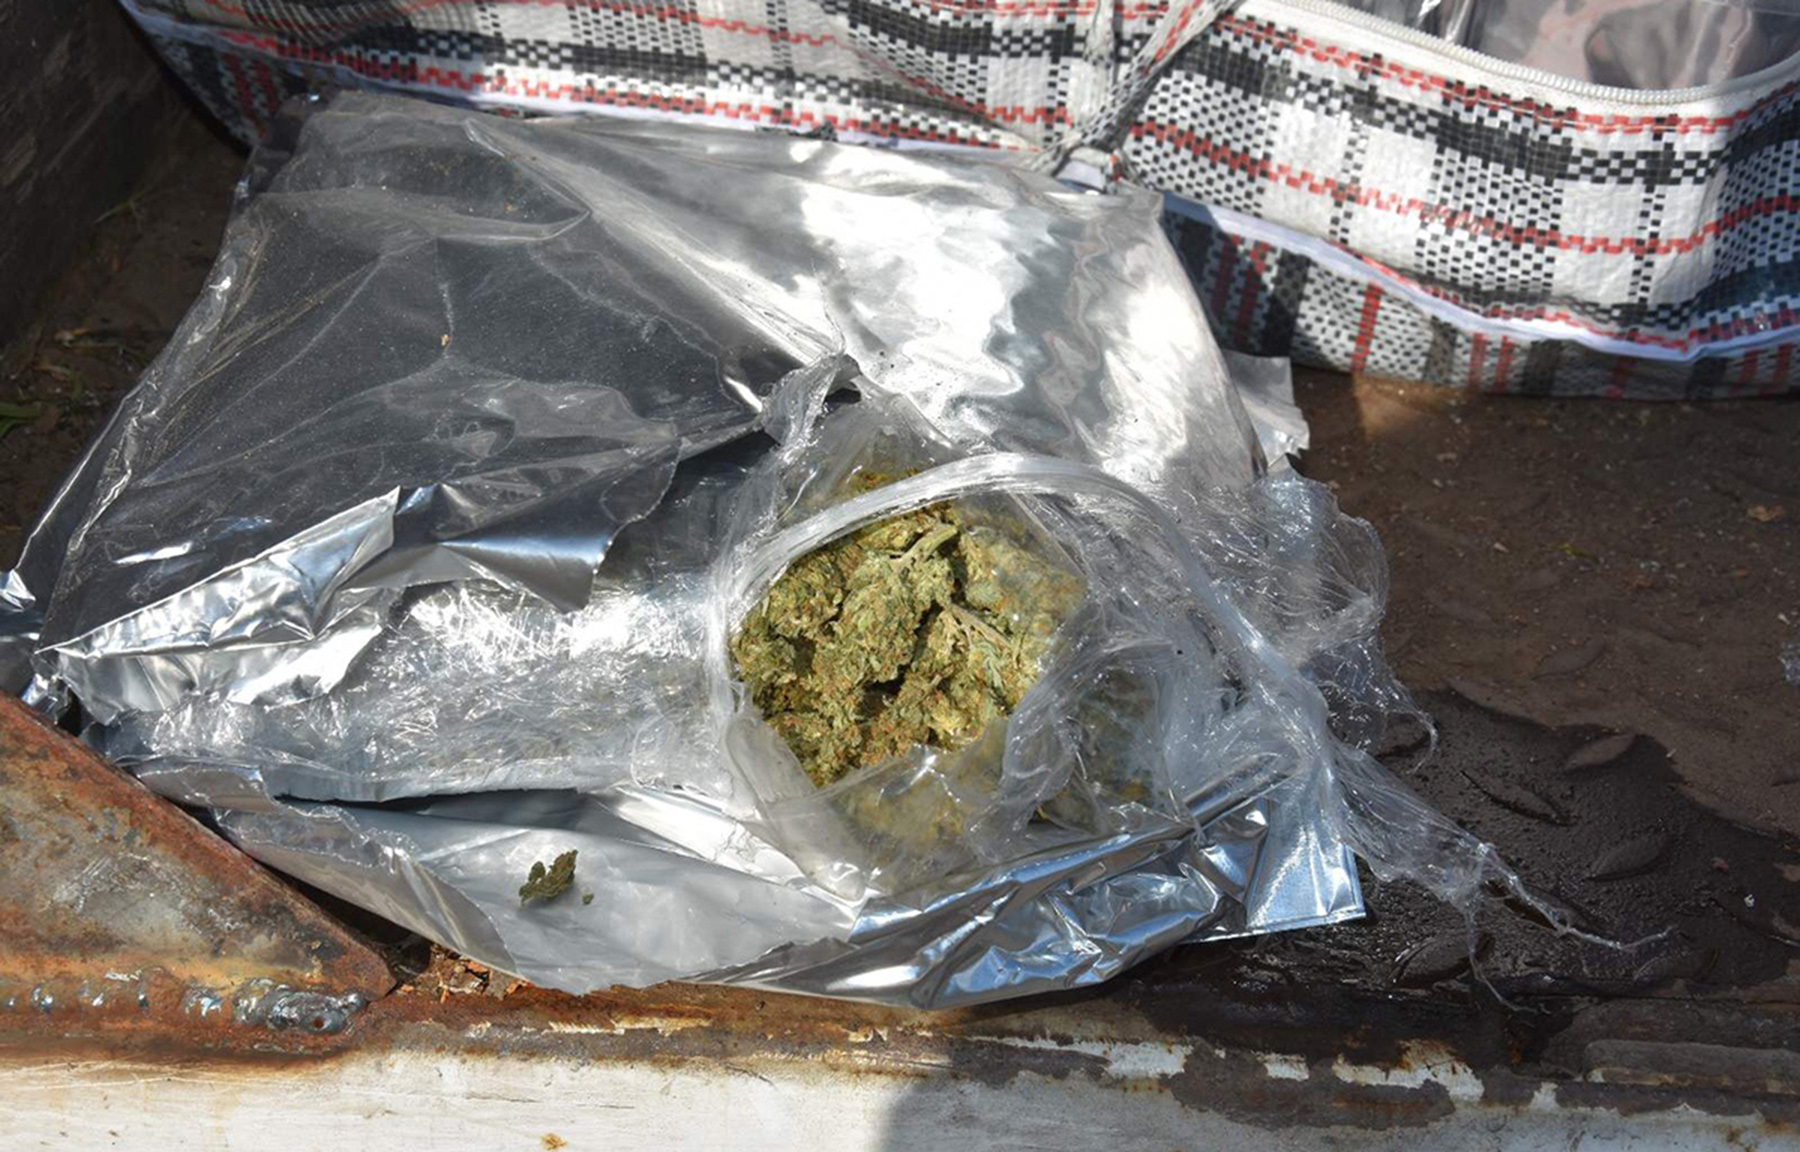 Zaplenjeno više od 65 kilograma marihuane i uhapšen osumnjičeni